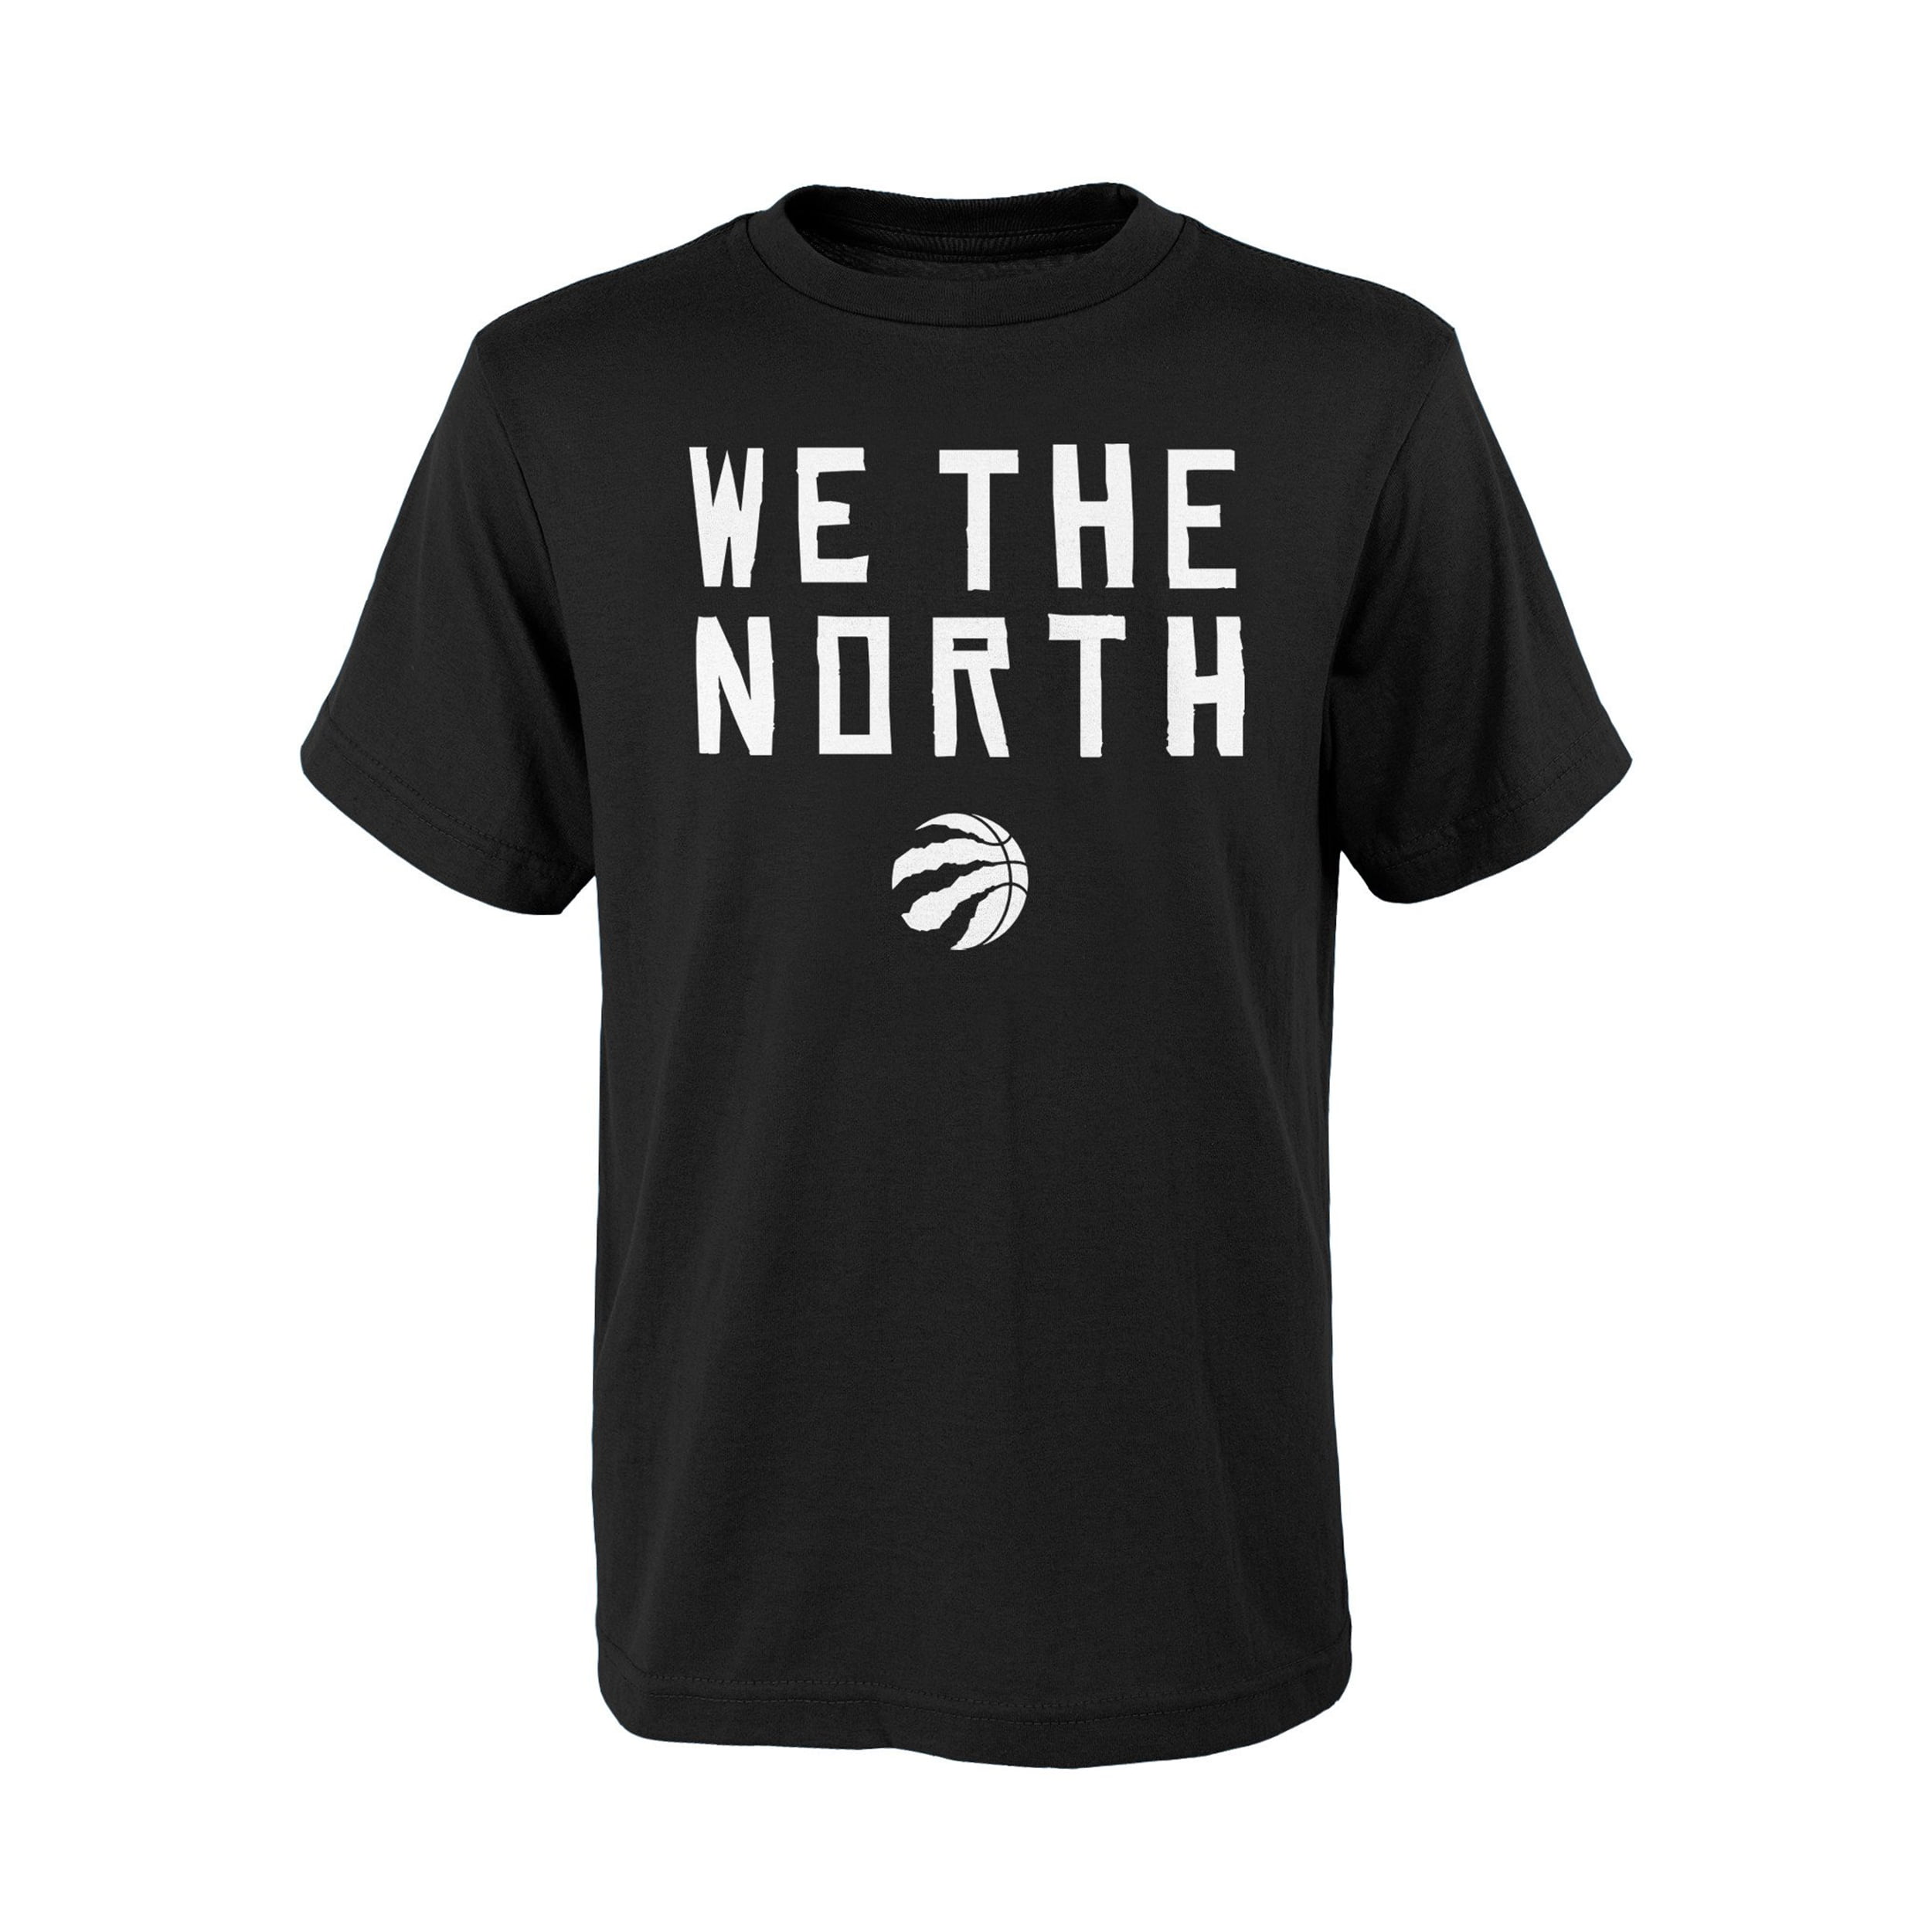 we the north women's shirt